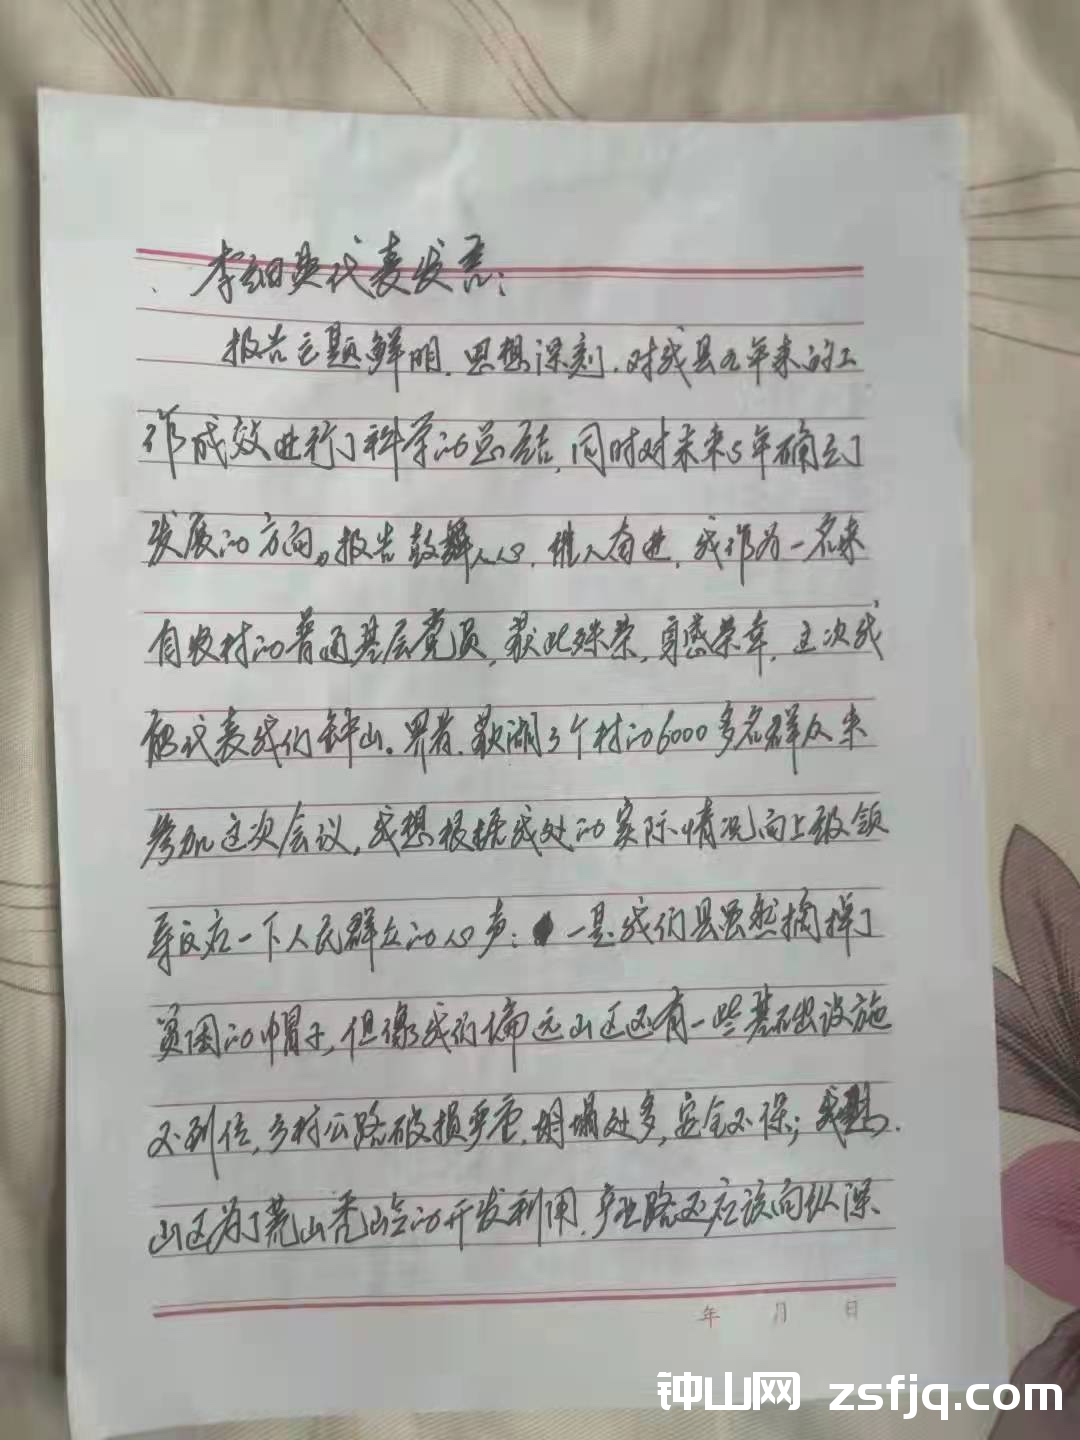 中共阳新县第十五届党代会龙港镇钟山党代表提案和发言记录-钟山网-钟山村